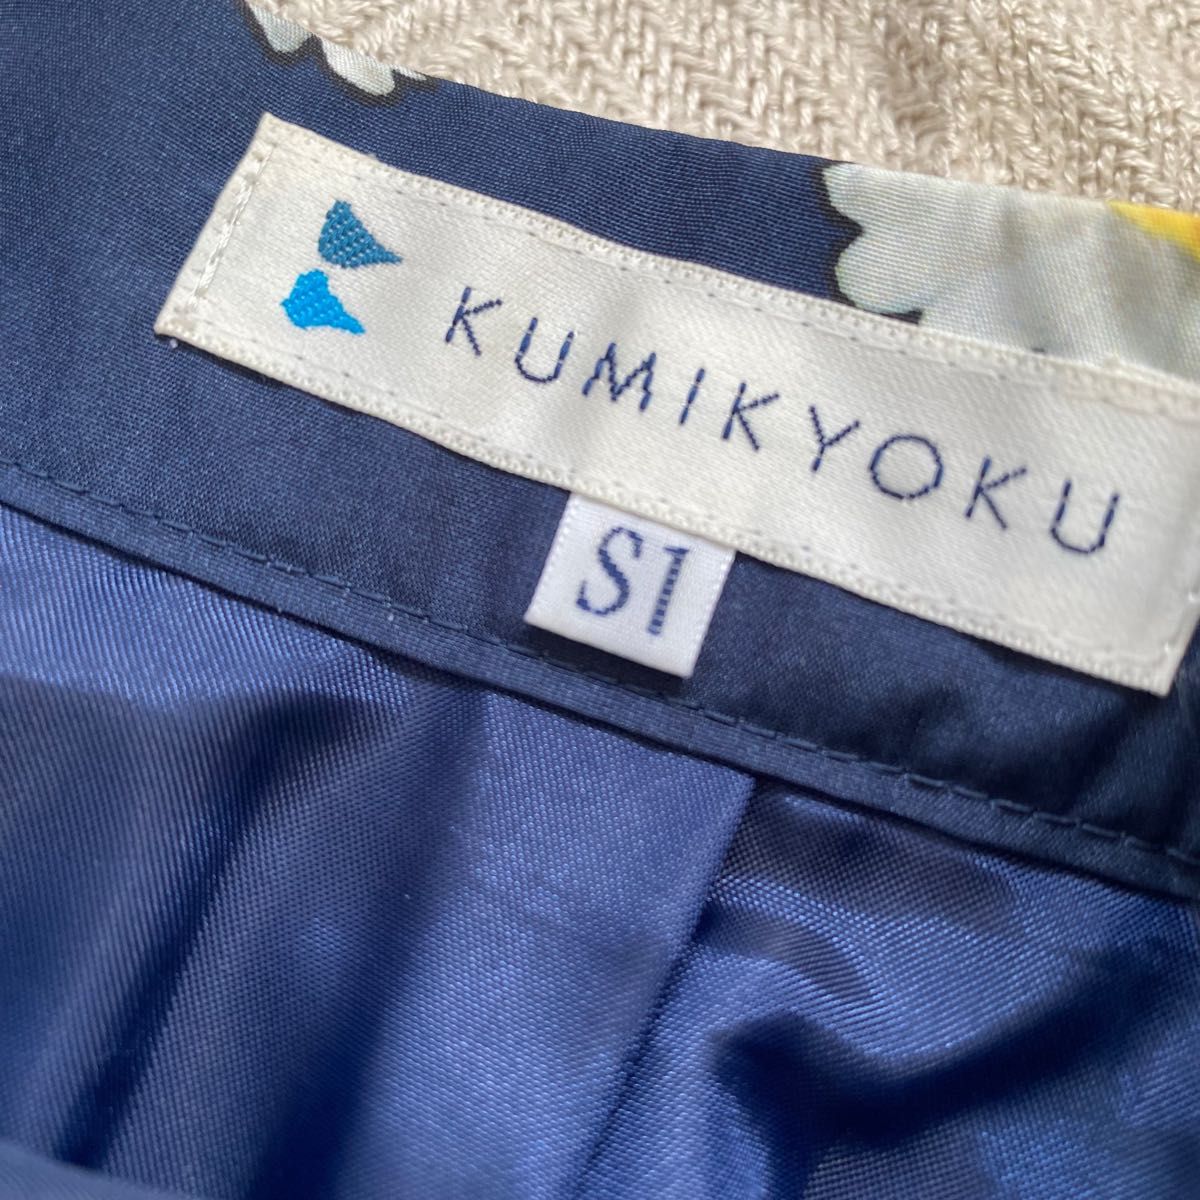 組曲 KUMIKYOKU スカート マーガレット柄 ネイビー S1